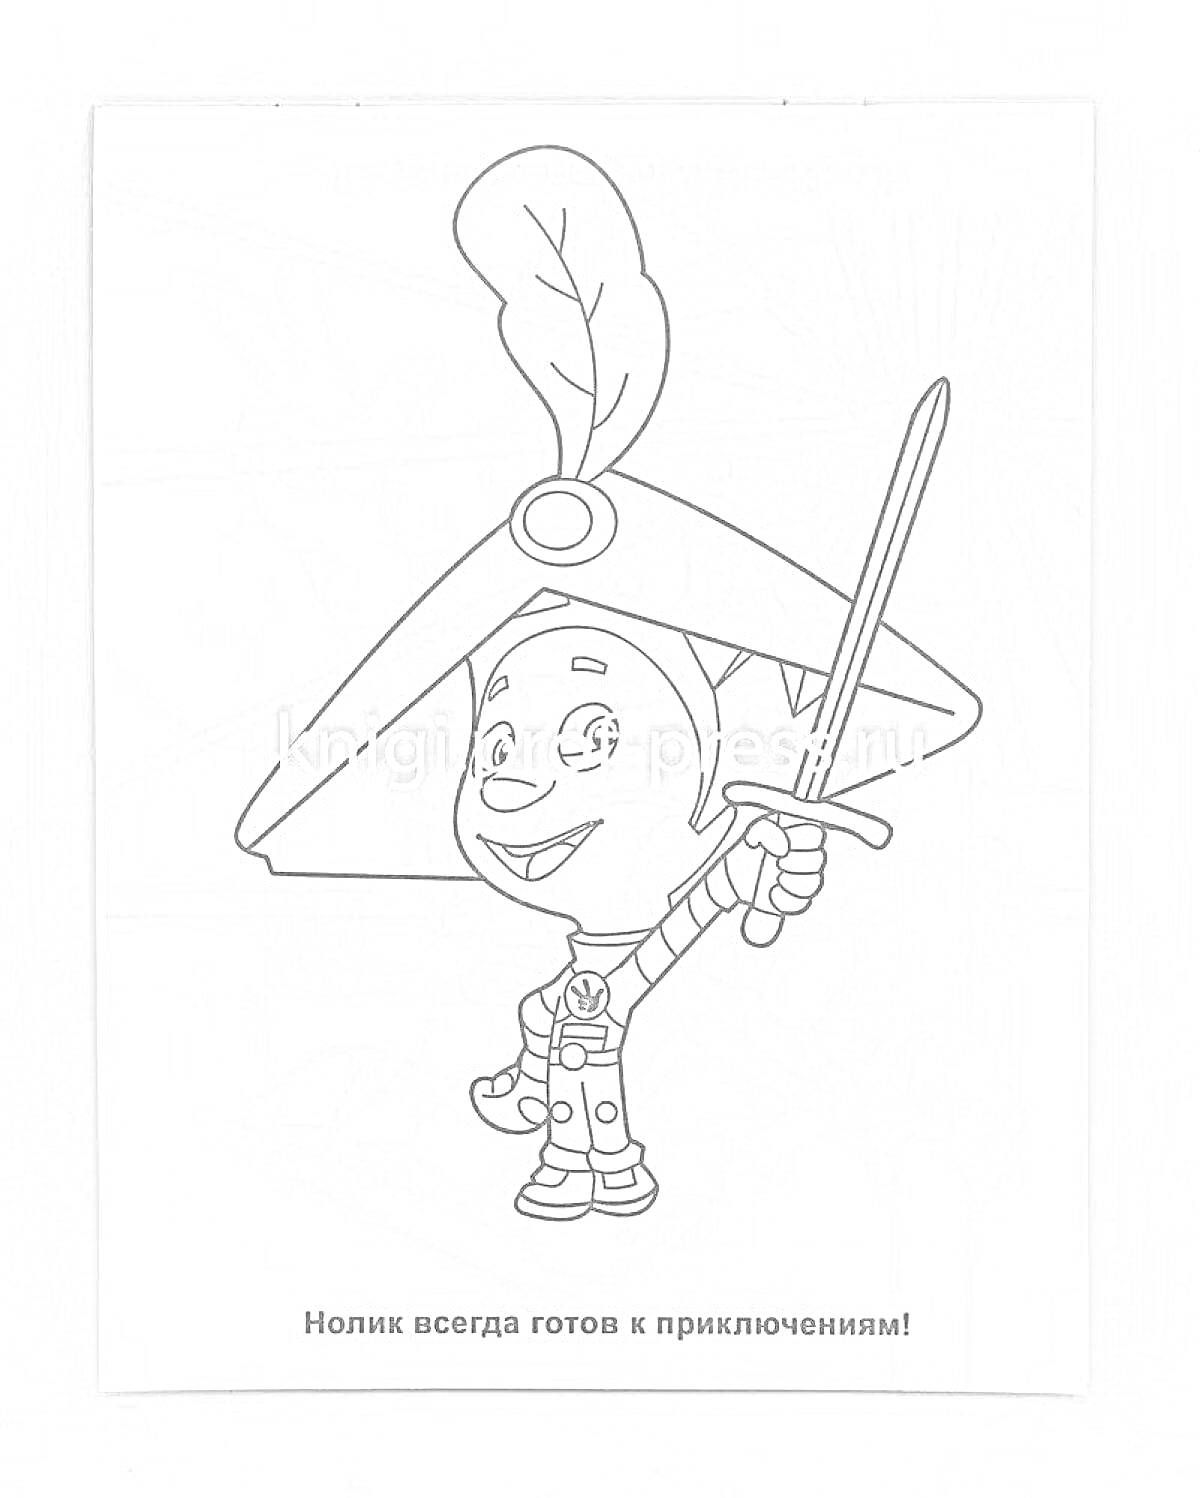 Раскраска Нолик в шляпе с пером и мечом, готовый к приключениям